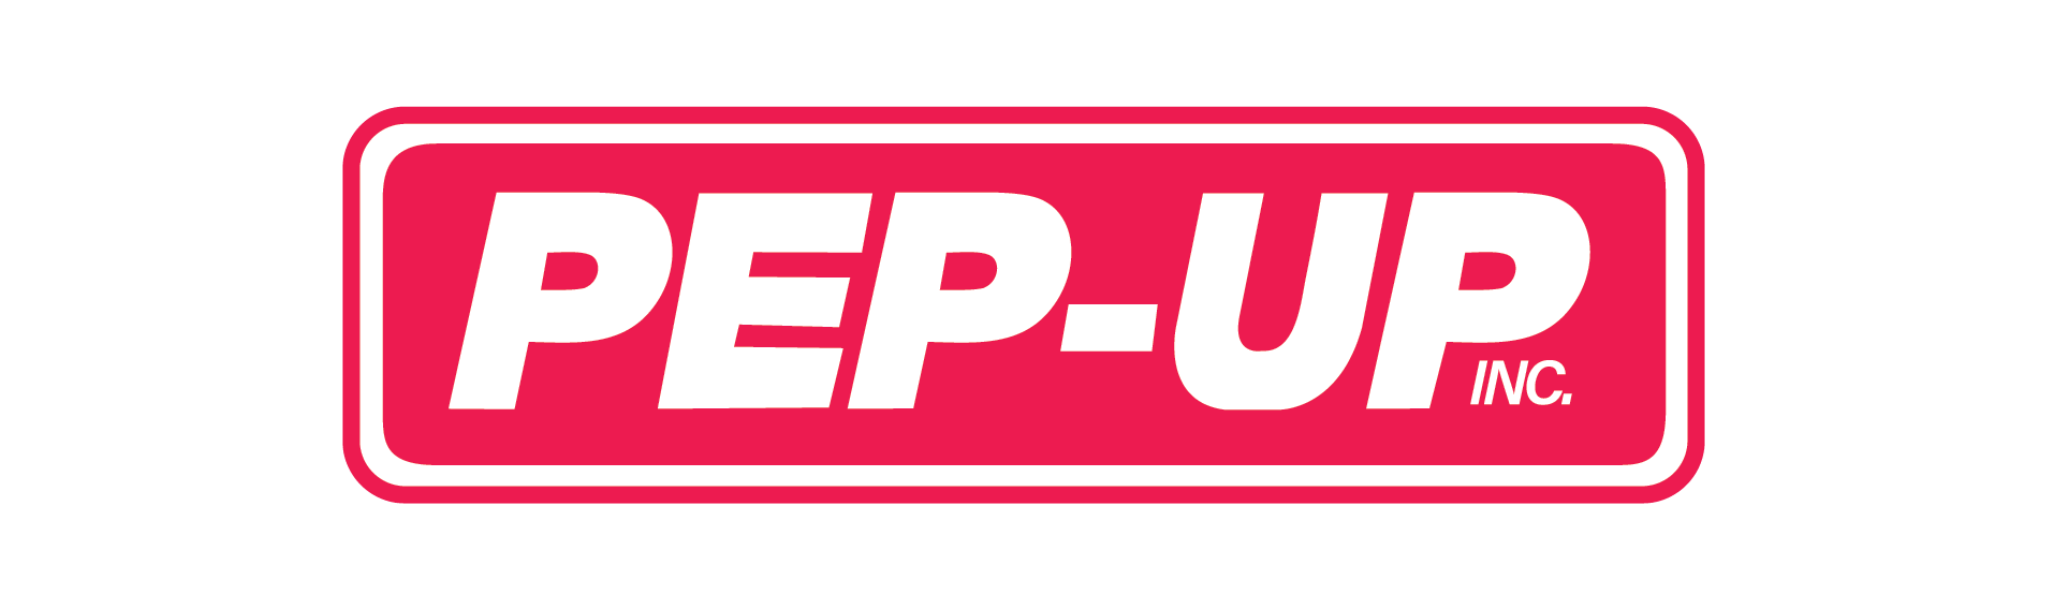 pep-up inc logo image